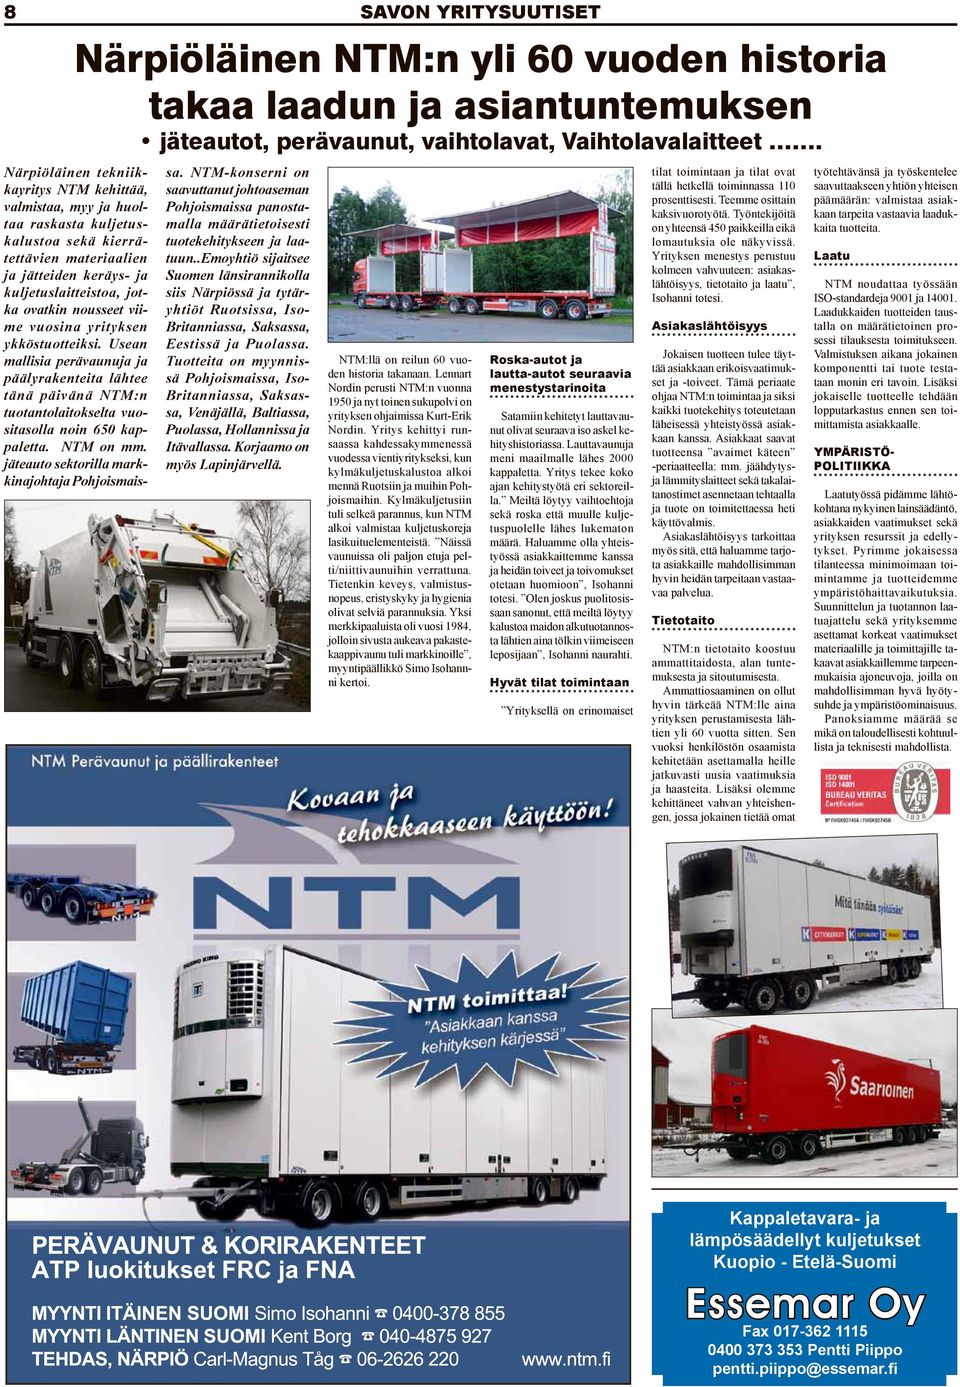 viime vuosina yrityksen ykköstuotteiksi. Usean mallisia perävaunuja ja päälyrakenteita lähtee tänä päivänä NTM:n tuotantolaitokselta vuositasolla noin 650 kappaletta. NTM on mm.